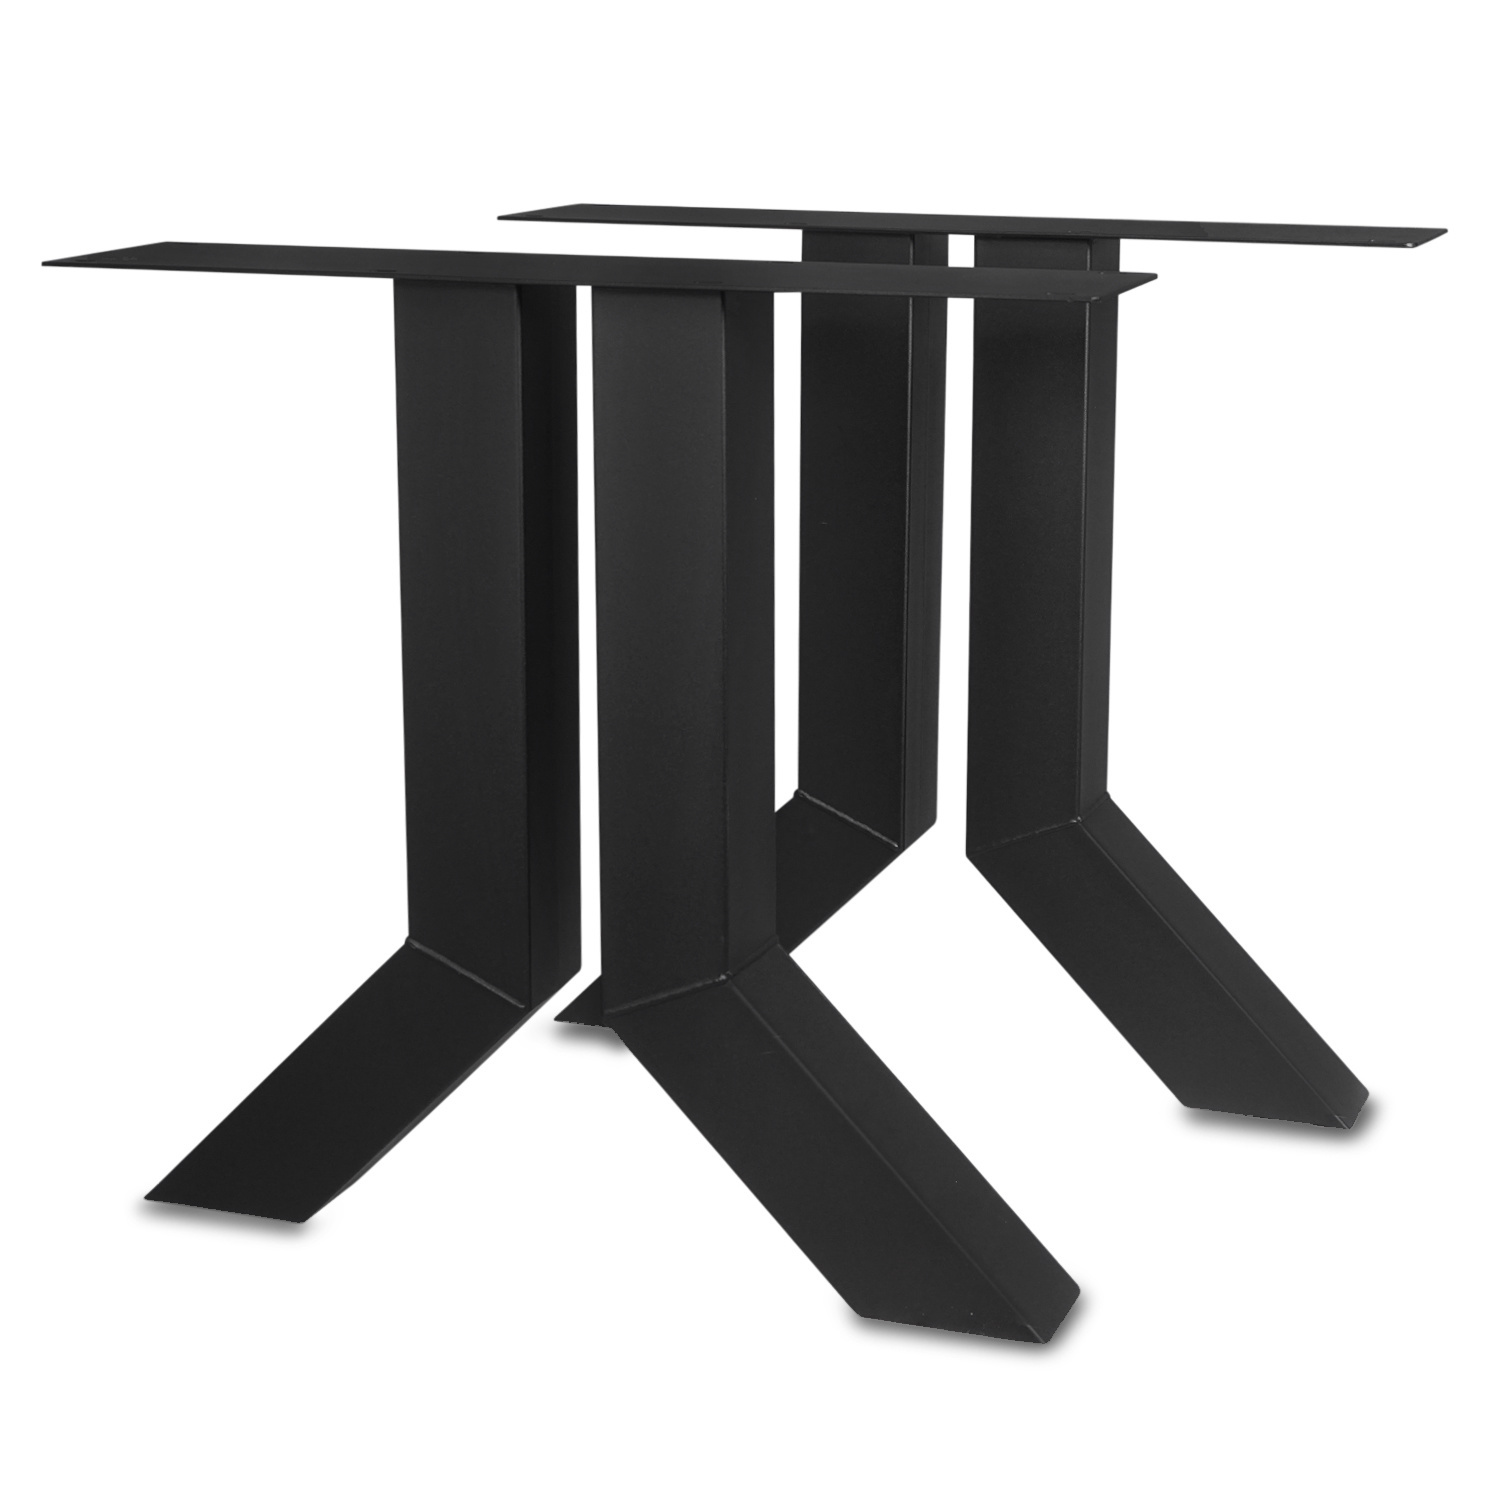  Tischbeine Y Metall SET (2 Stück) - 10x10 cm - 72 cm breit - 72 cm hoch - Y-form Tischkufen / Tischgestell beschichtet - Schwarz